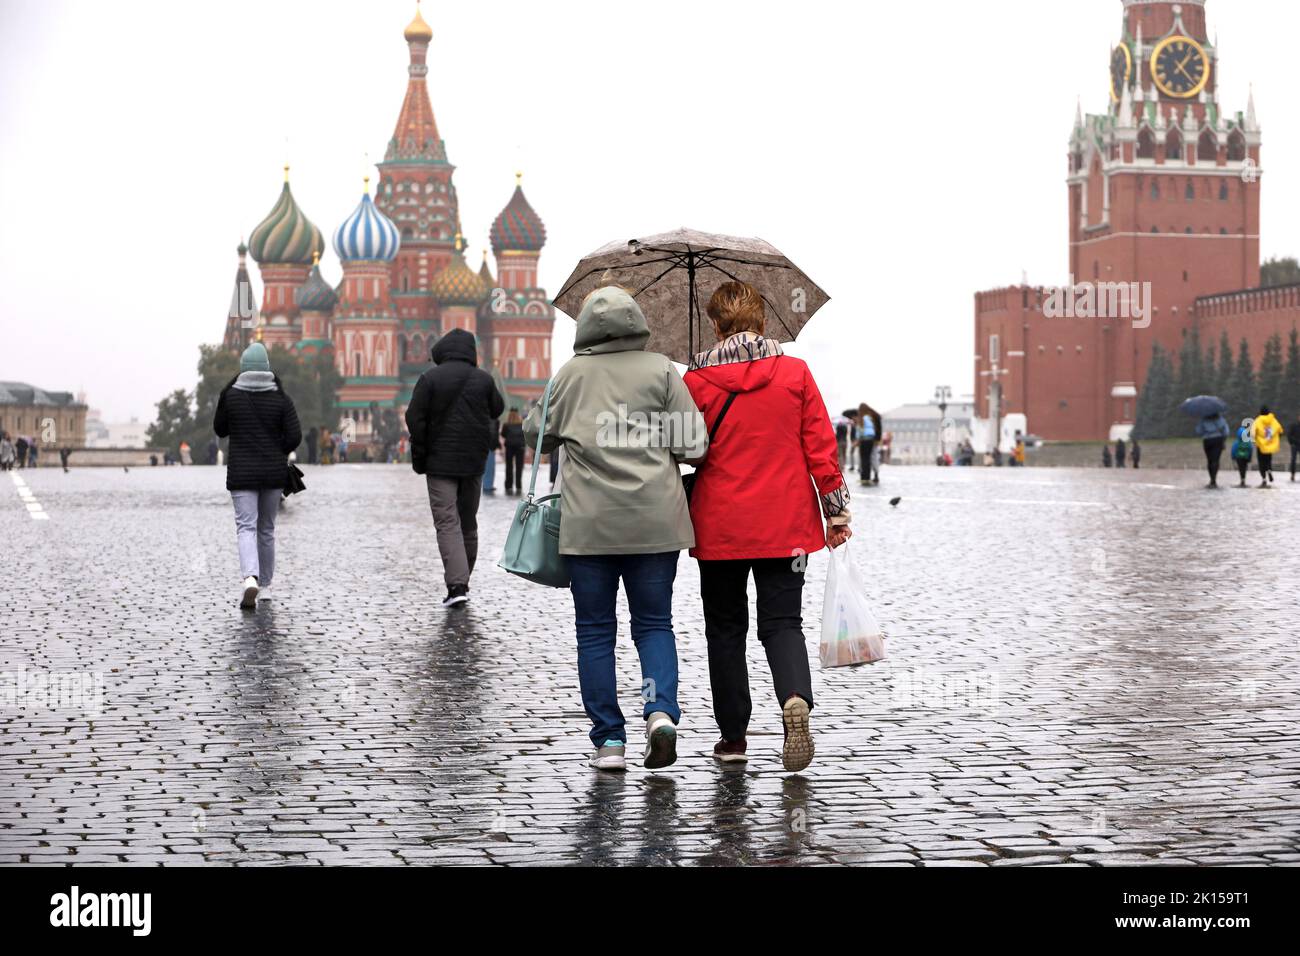 Lluvia En Moscú, dos mujeres con un paraguas caminan sobre una plaza roja al fondo de la Catedral de San Basilio y la torre del Kremlin. Clima lluvioso en otoño Foto de stock